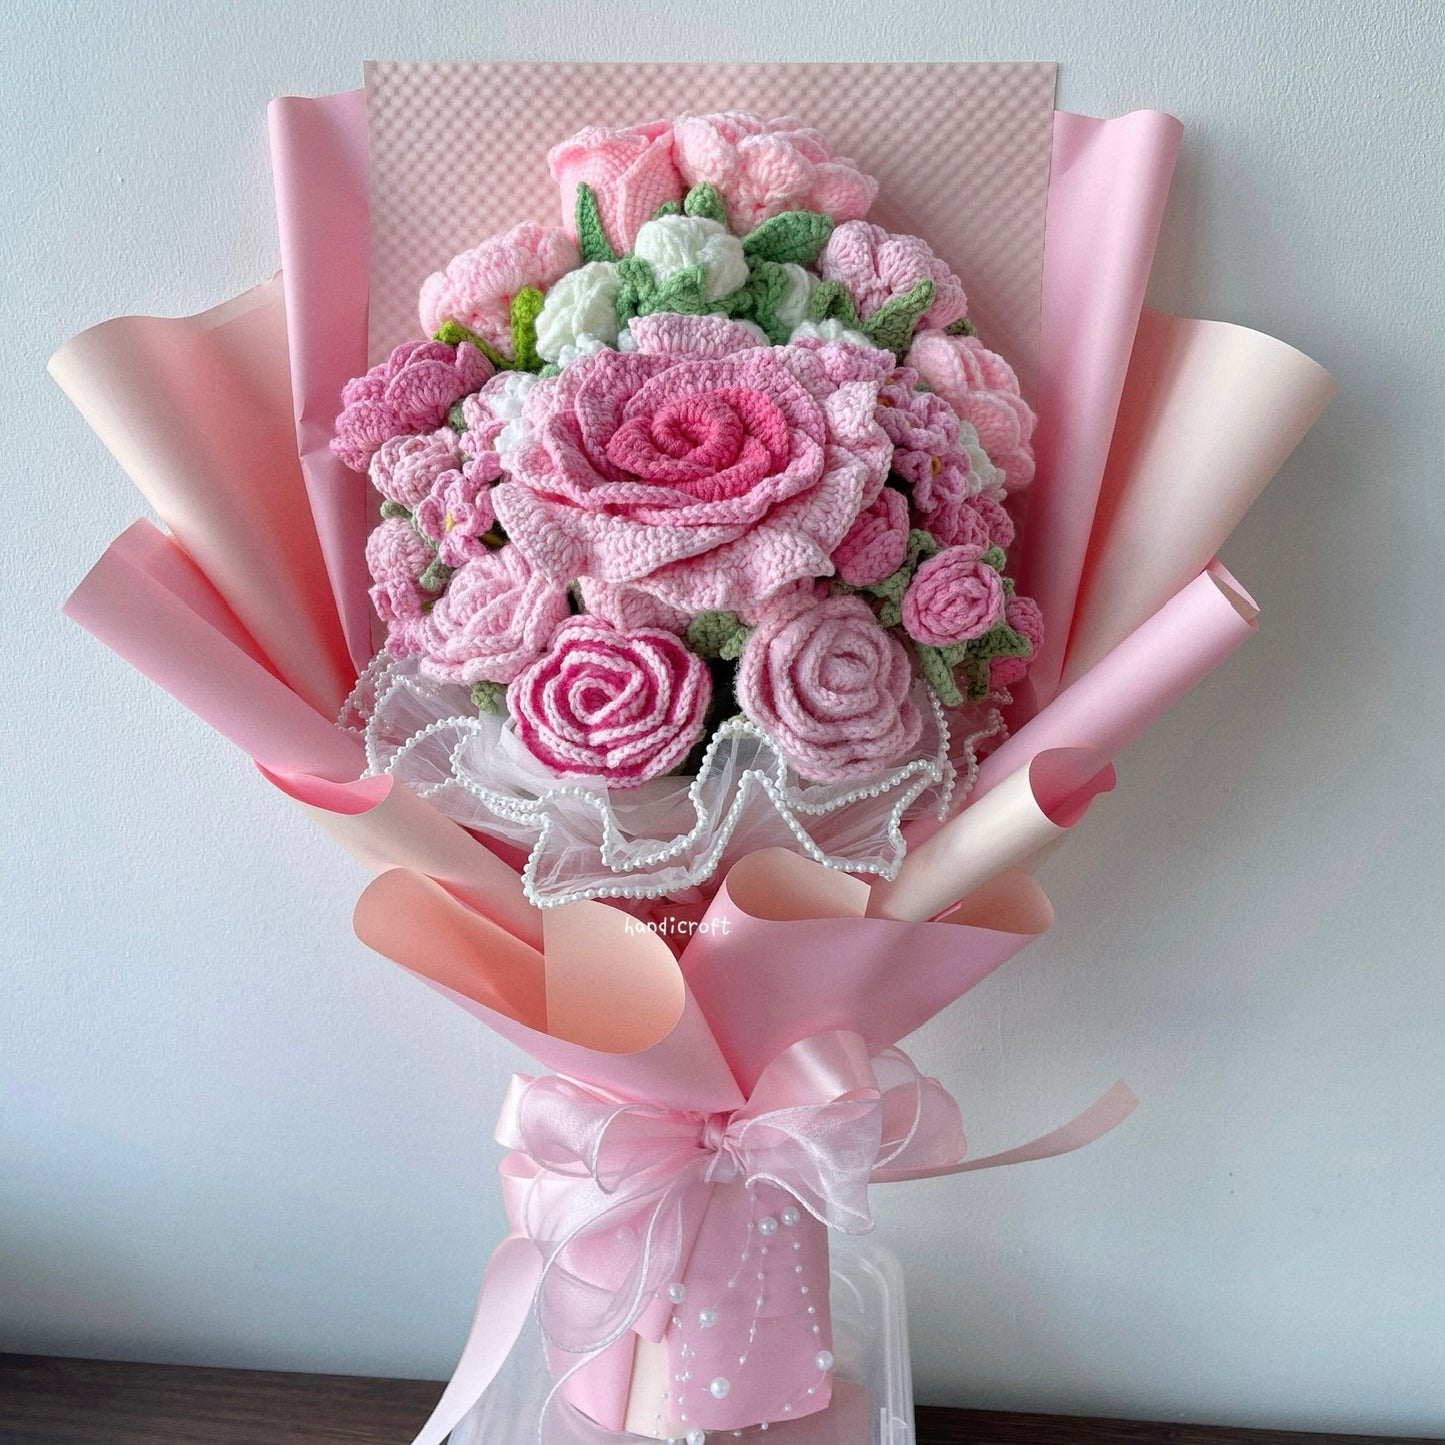 in love's garden - crochet flower bouquet ♡